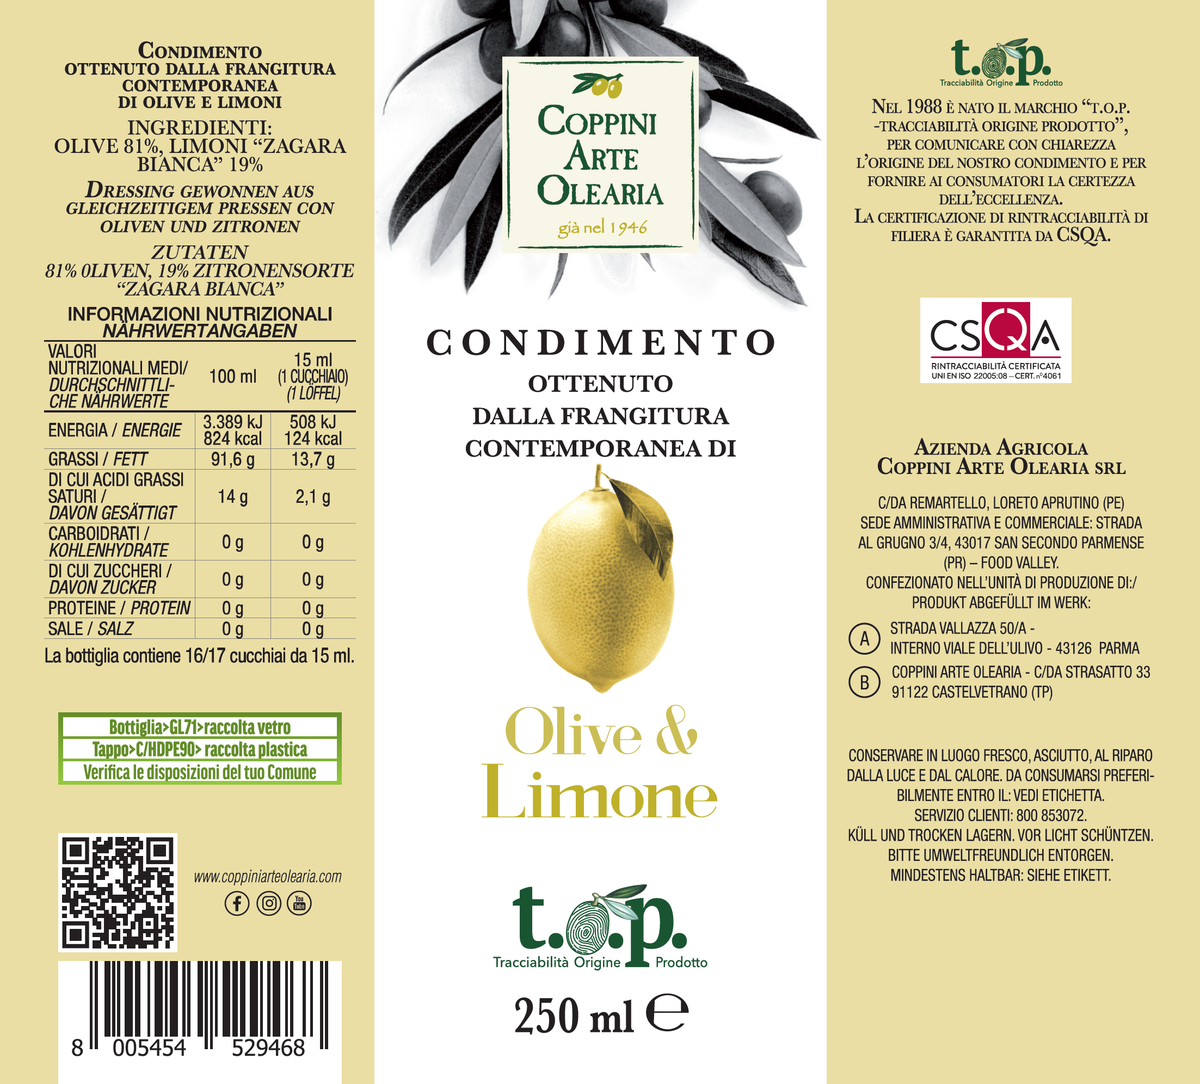 Etichetta olio al limone Coppini Arte Olearia